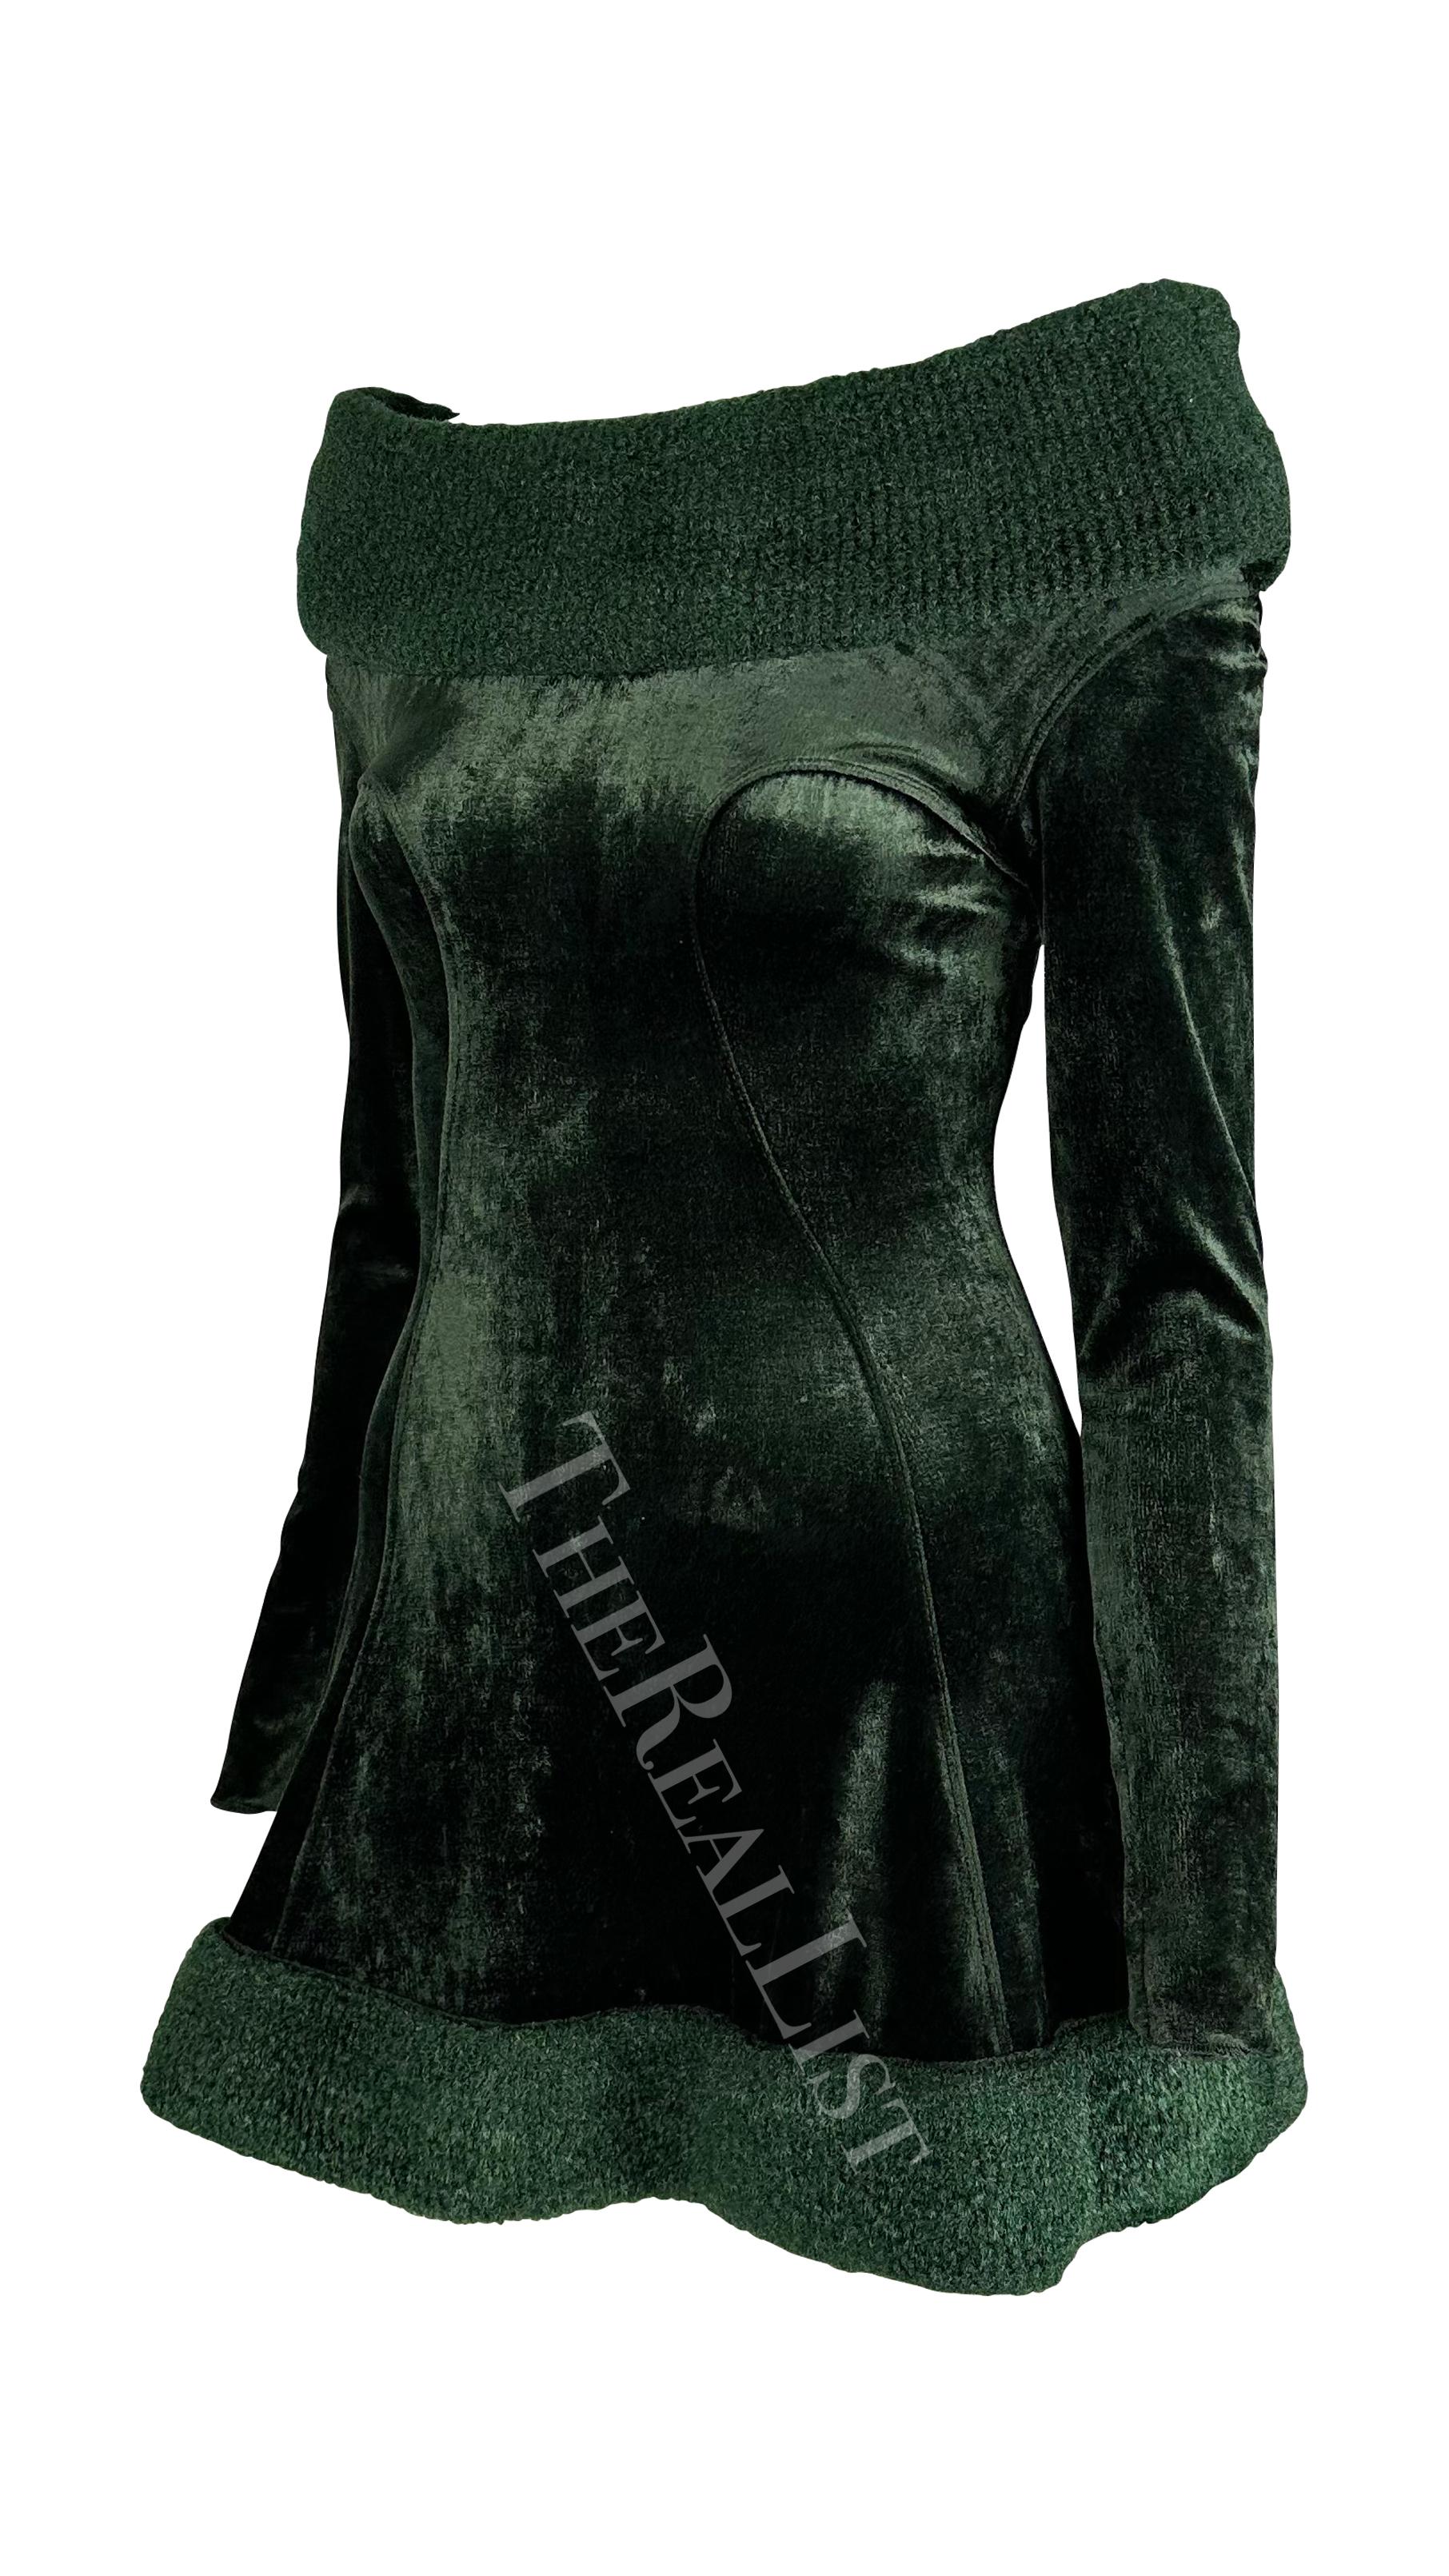 Présentation d'une fabuleuse mini robe Alaia vert foncé. Issue de la collection Automne/Hiver 1991, cette robe est confectionnée en velours d'un vert profond et riche. Cette mini robe ajustée est dotée de manches longues, d'une jupe évasée et d'une